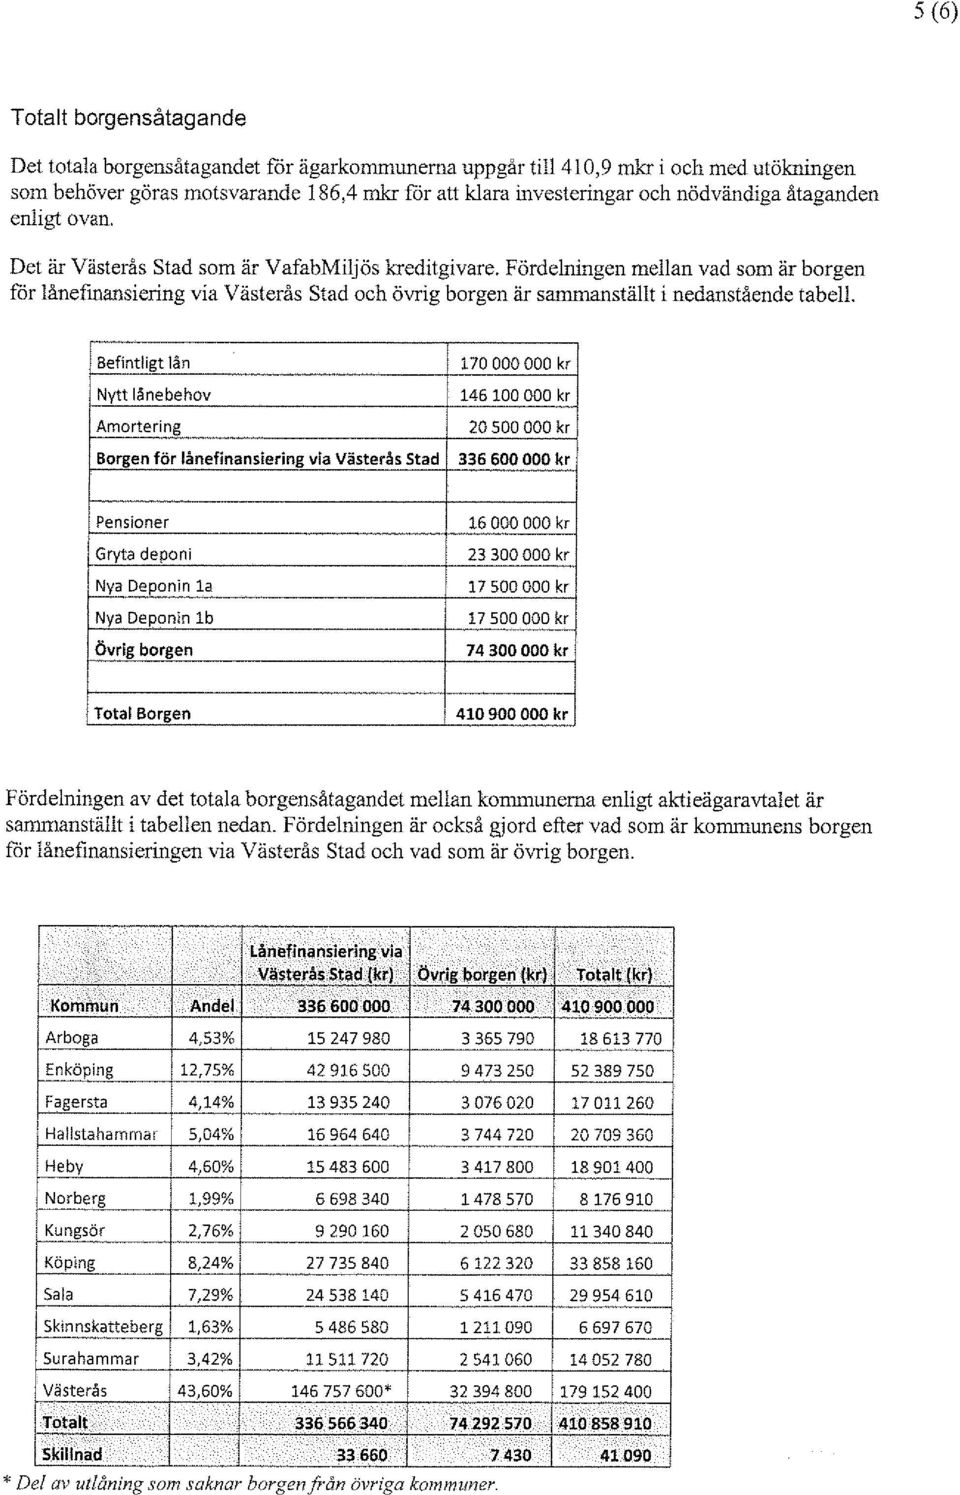 Fördelningen mellan vad som är borgen för lånefmansiering via Västerås Stad och övrig borgen är sammanställt i nedanstående tabell.